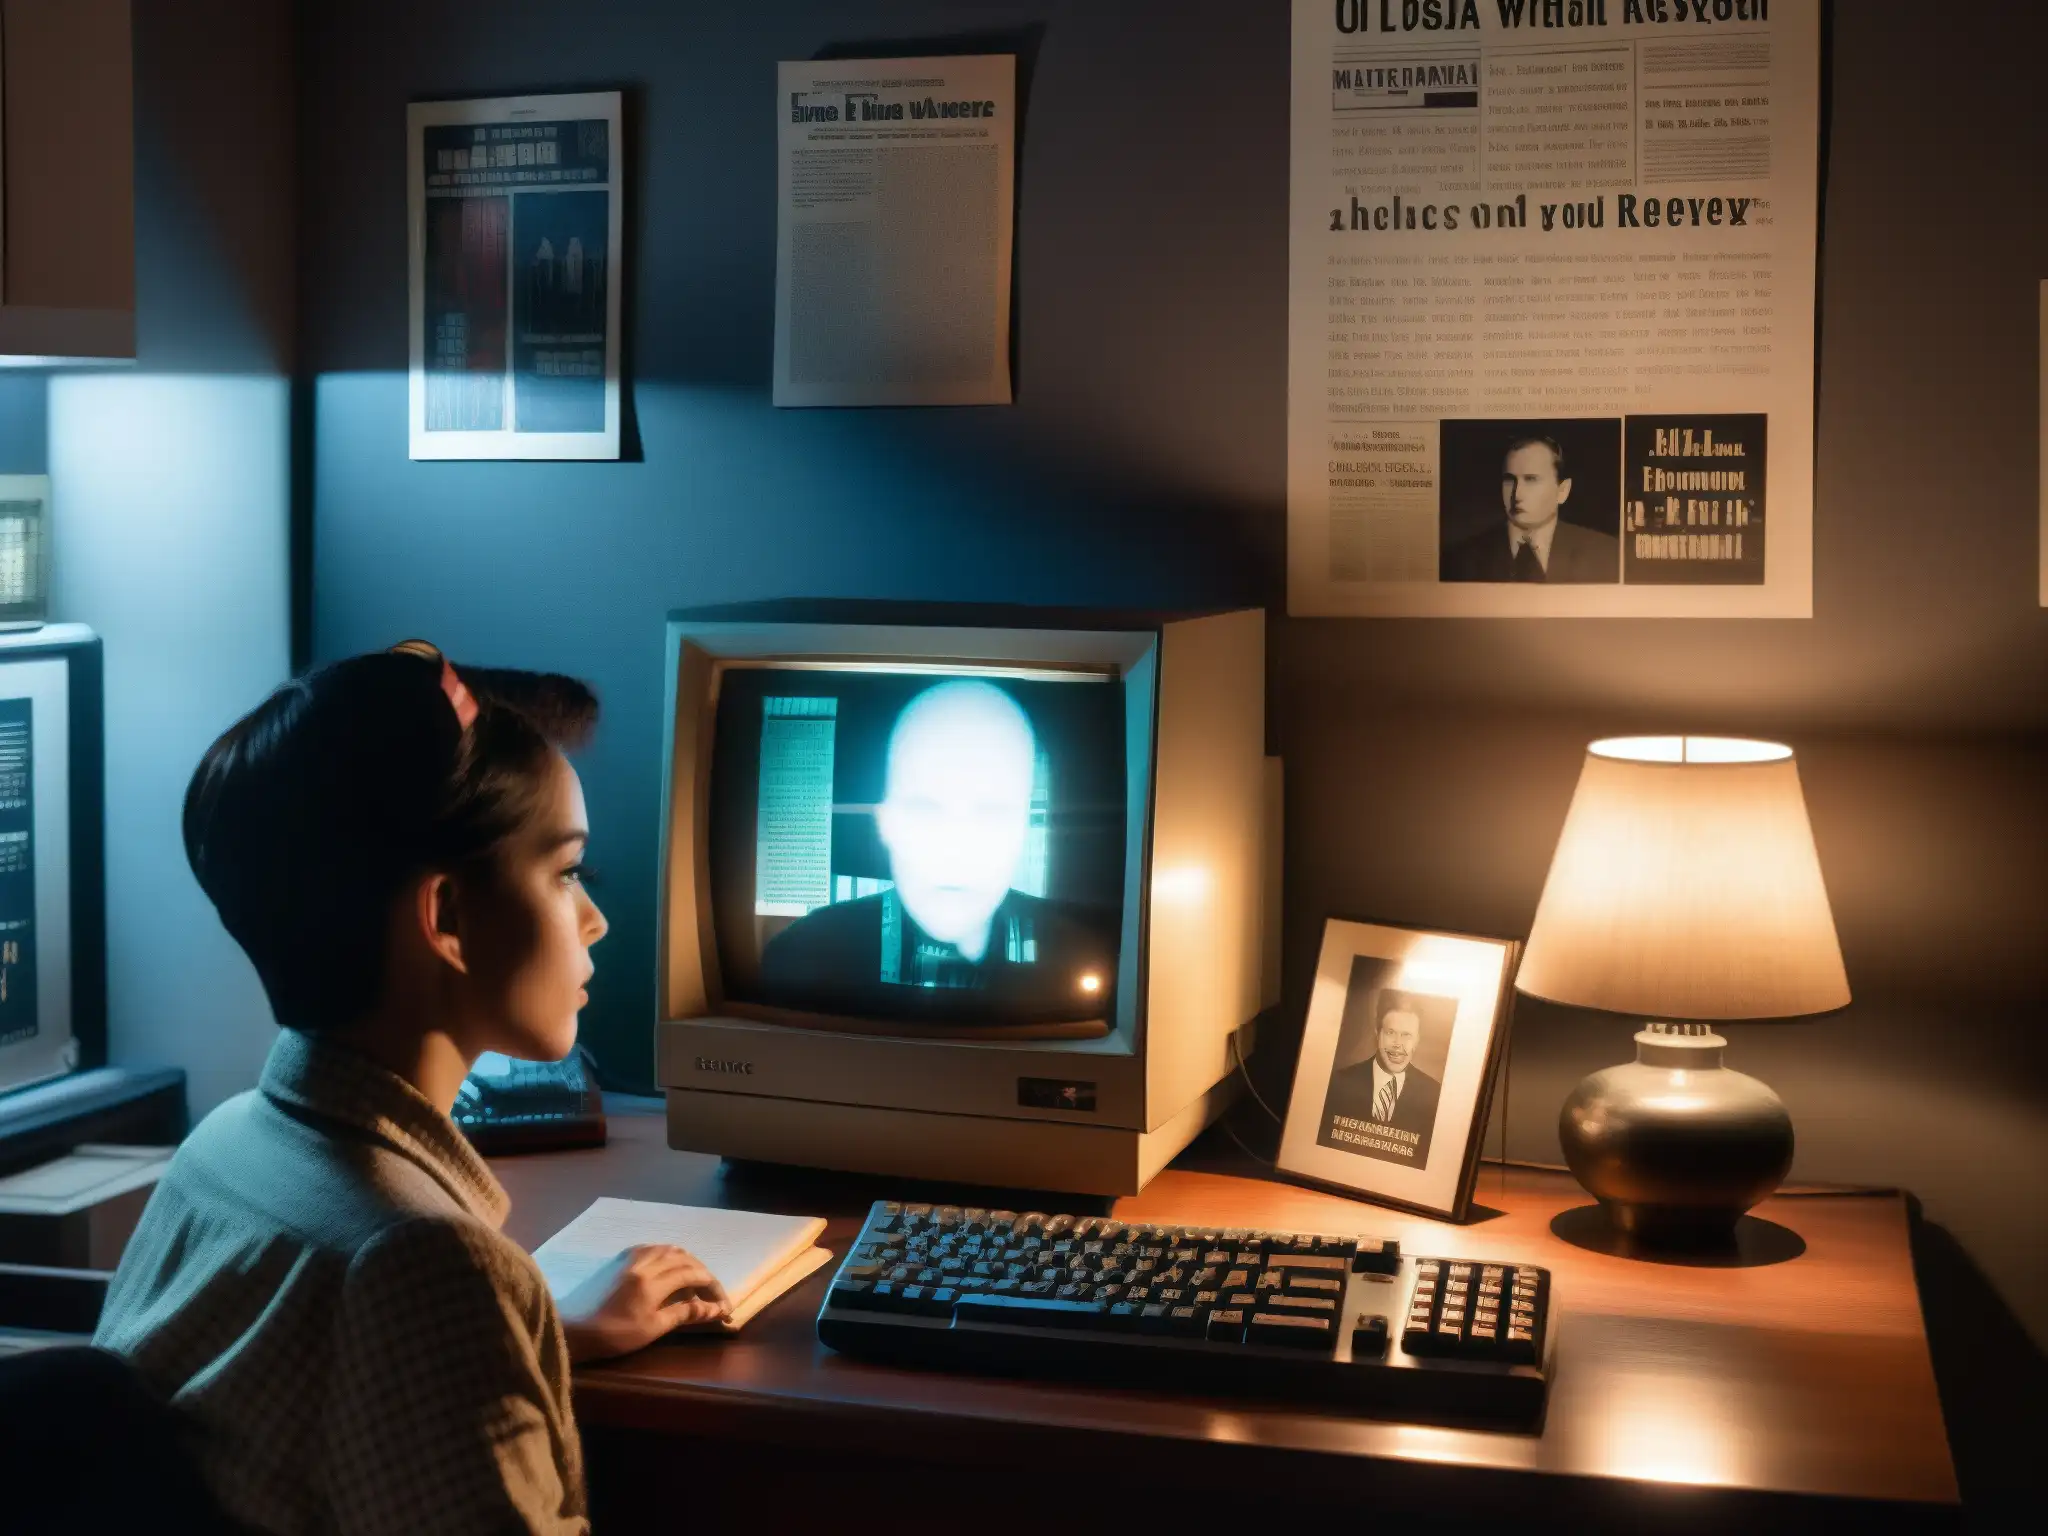 Un ambiente oscuro con un antiguo ordenador en un escritorio, mostrando una imagen pixelada de una figura fantasmal